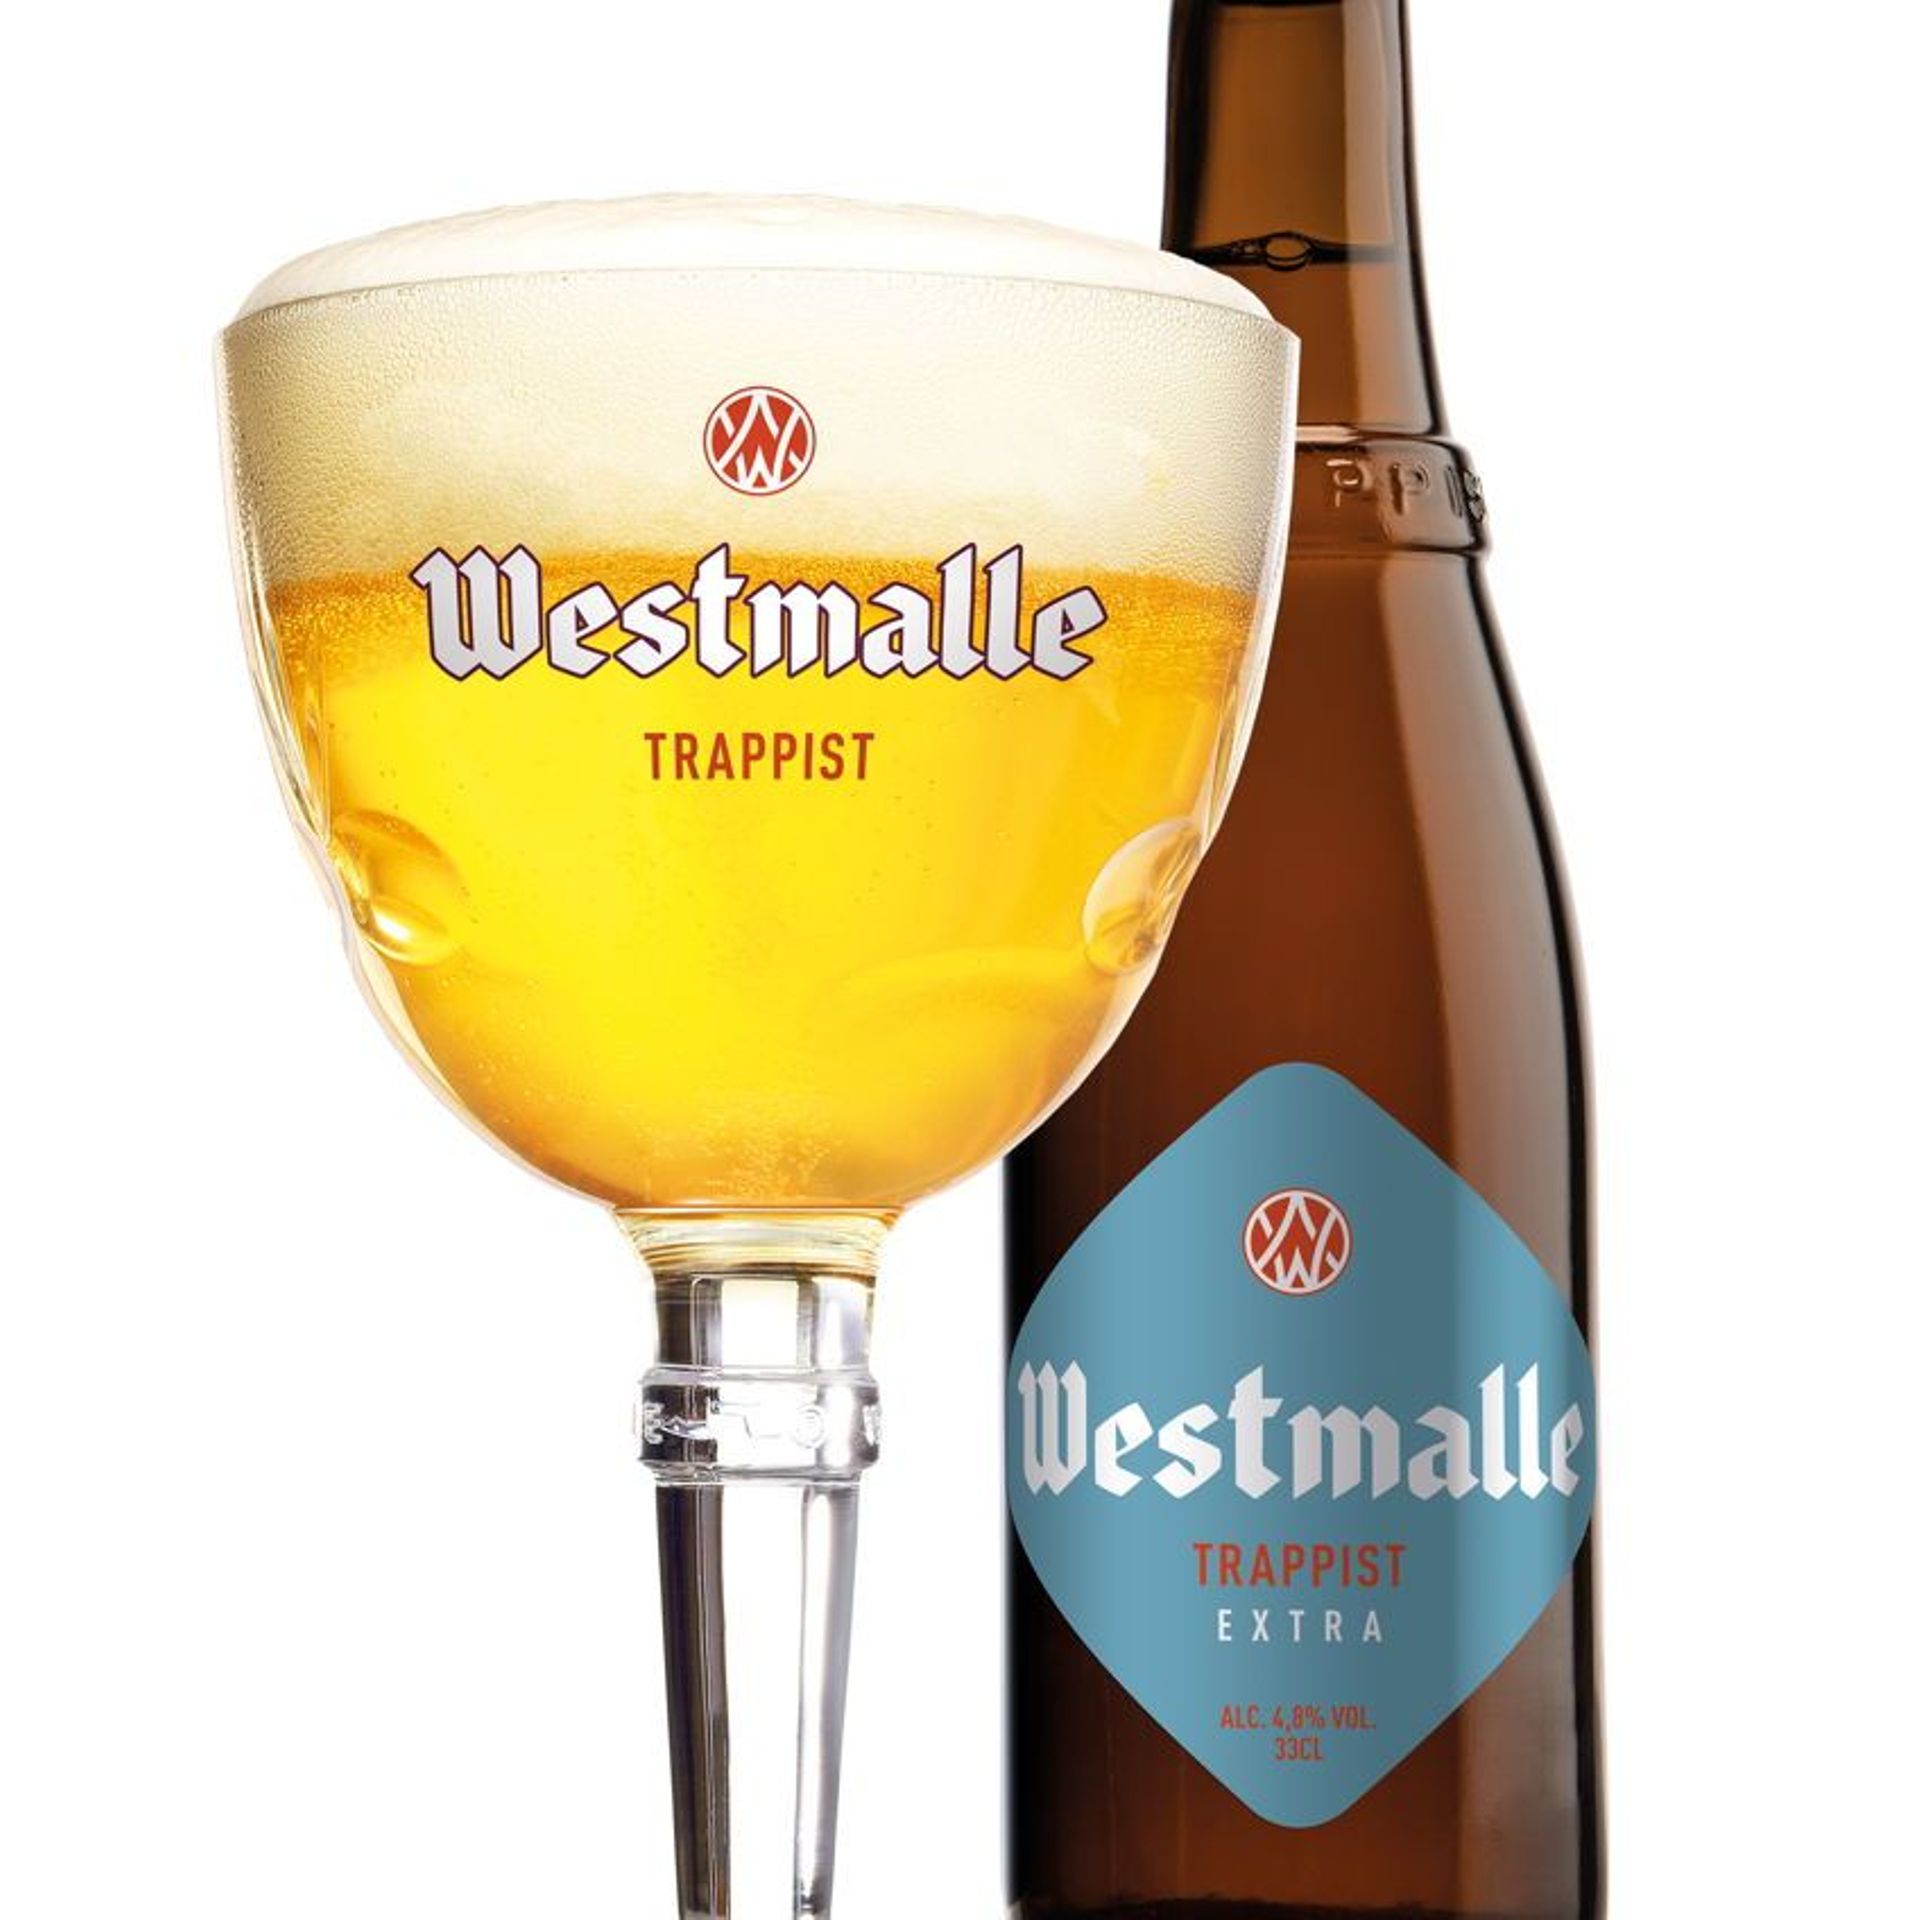 Westvleteren : la meilleure bière trappiste du monde ? - FreshMAG